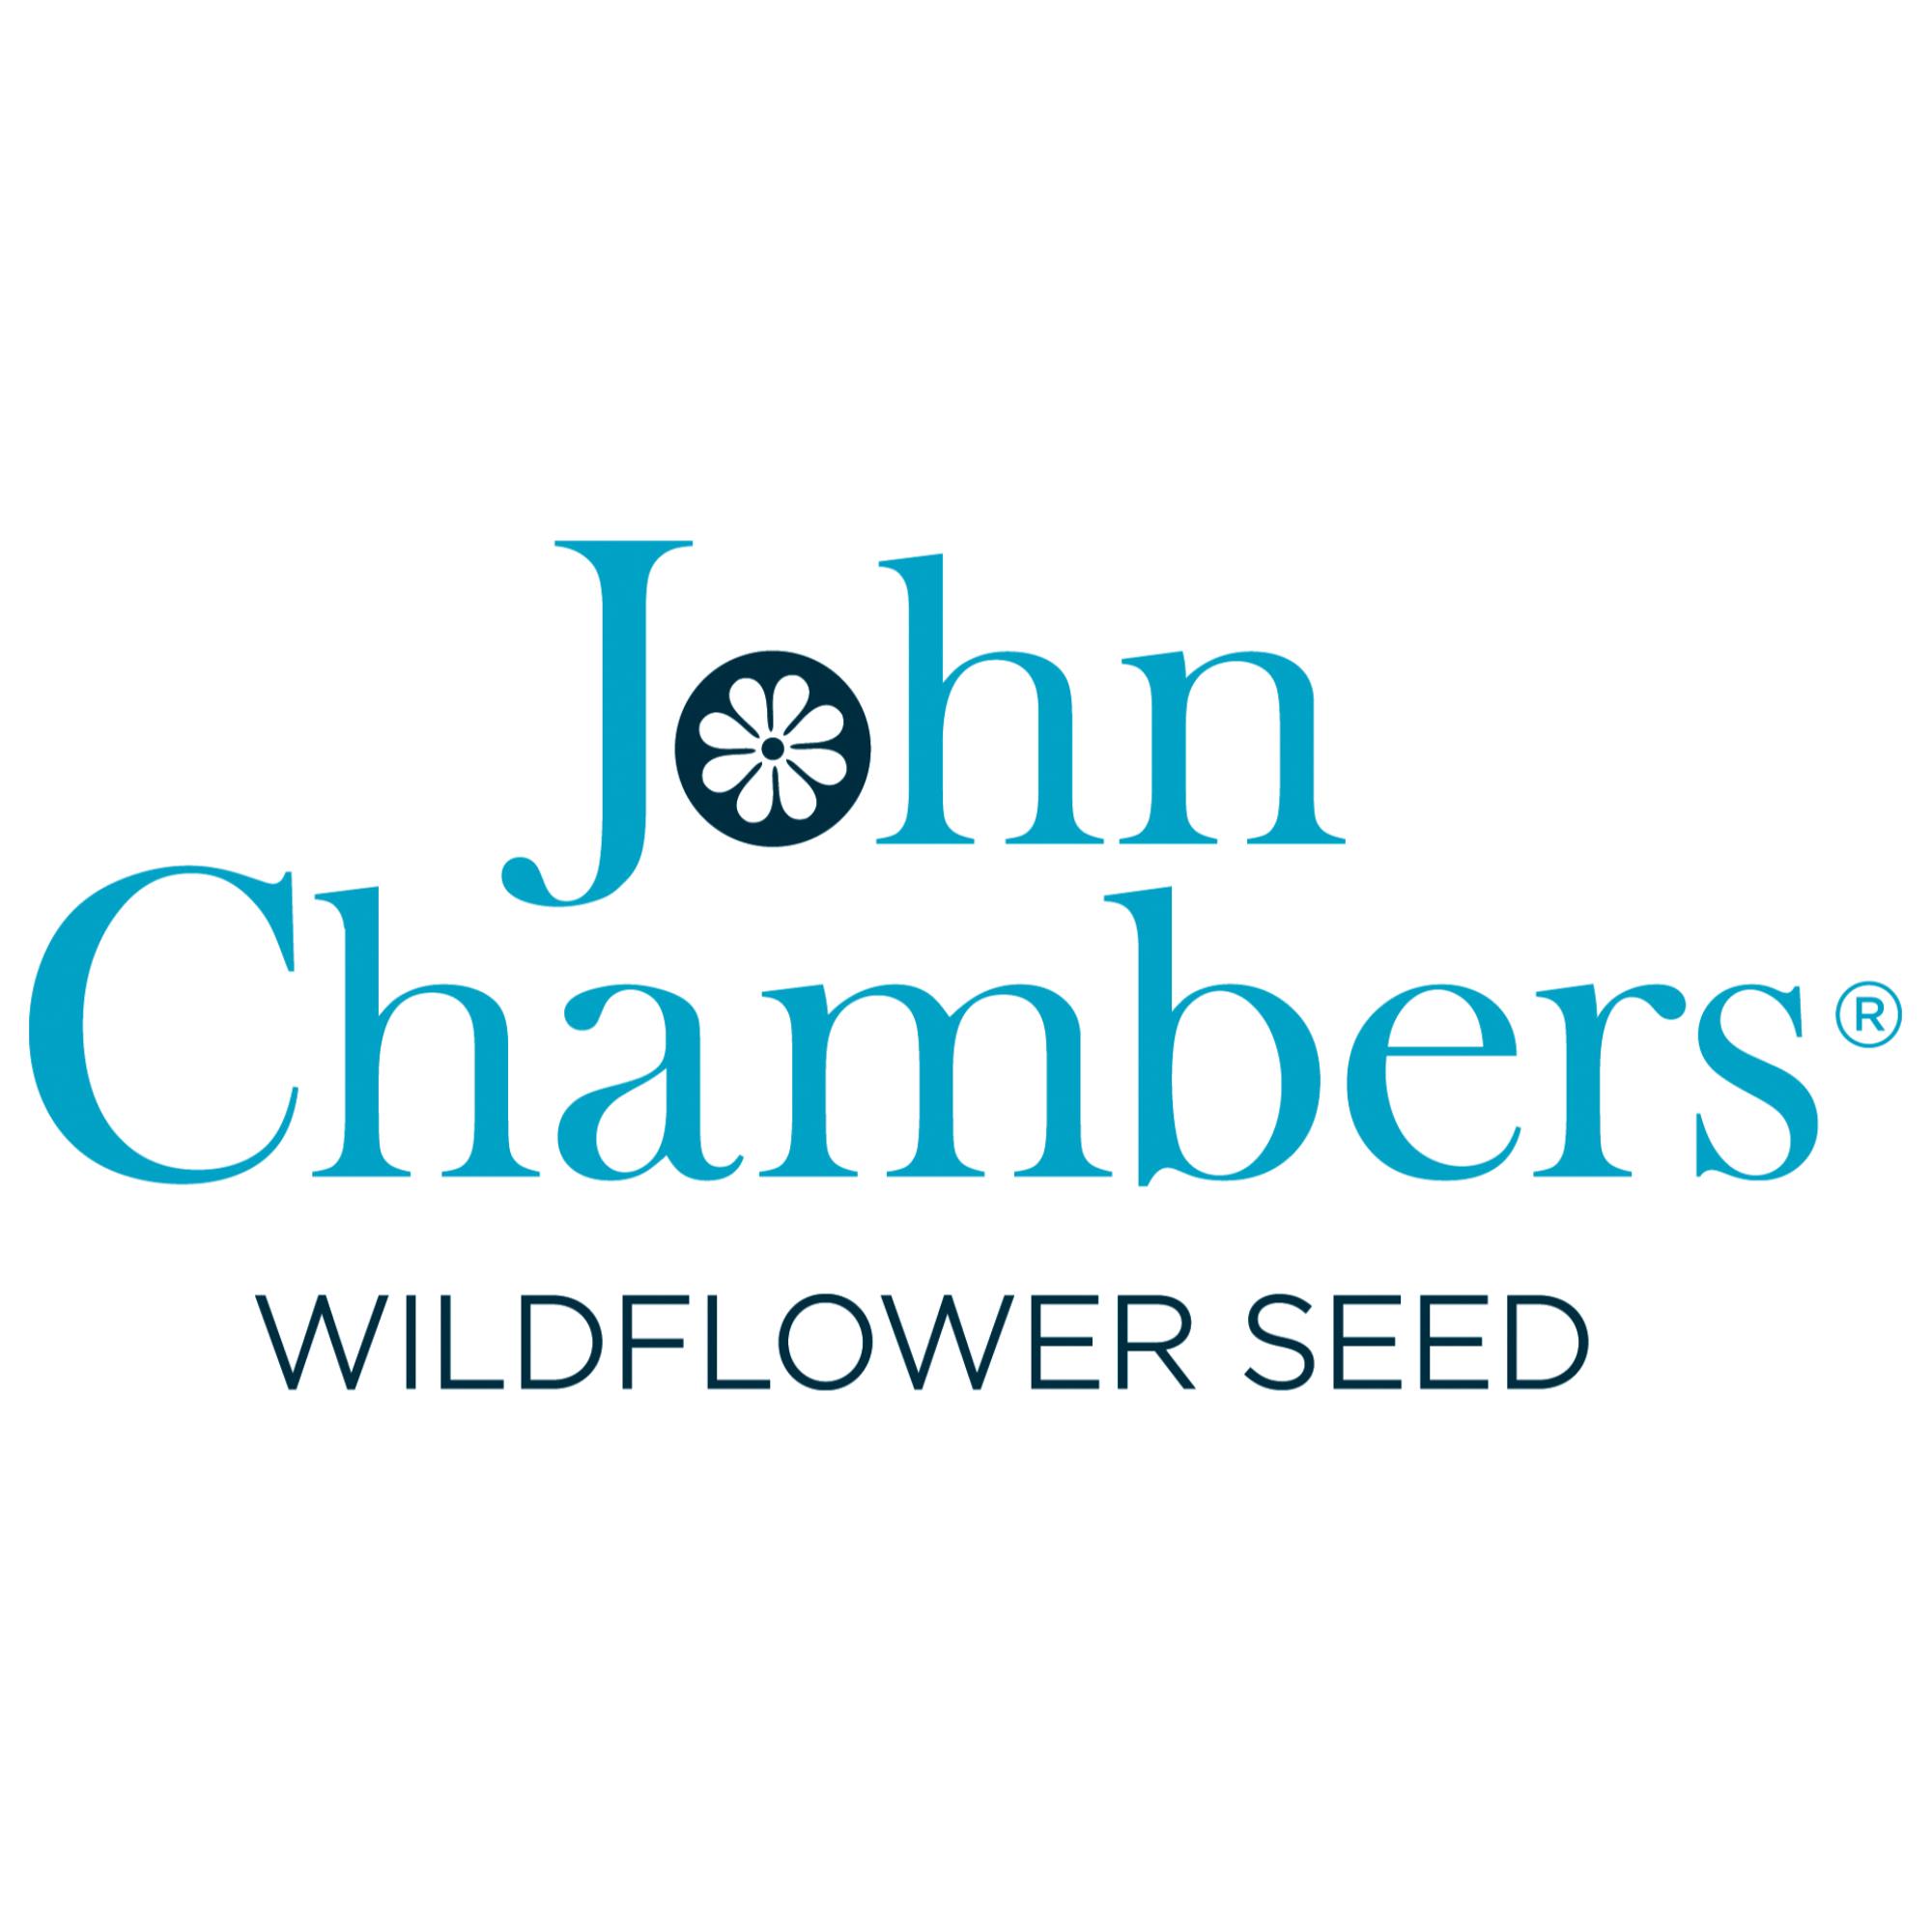 John Chambers Wildflowers